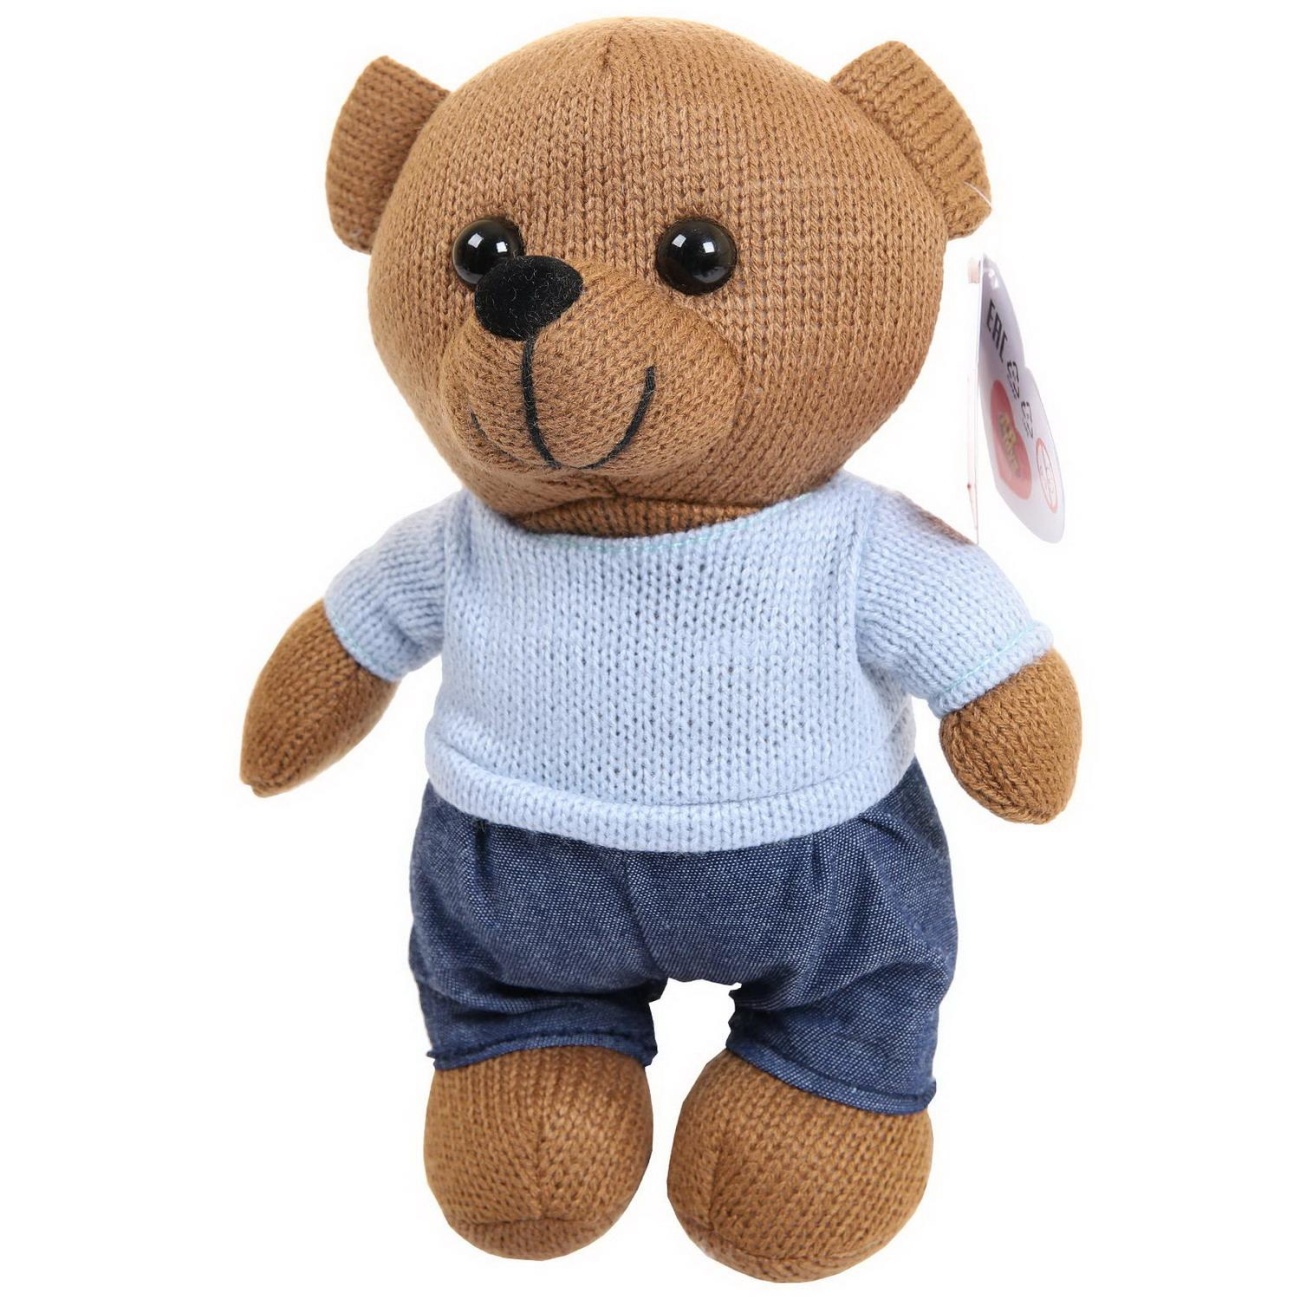 Мягкая игрушка Abtoys Knitted. Мишка мальчик вязаный, 22см в джинсах и свитере M4912